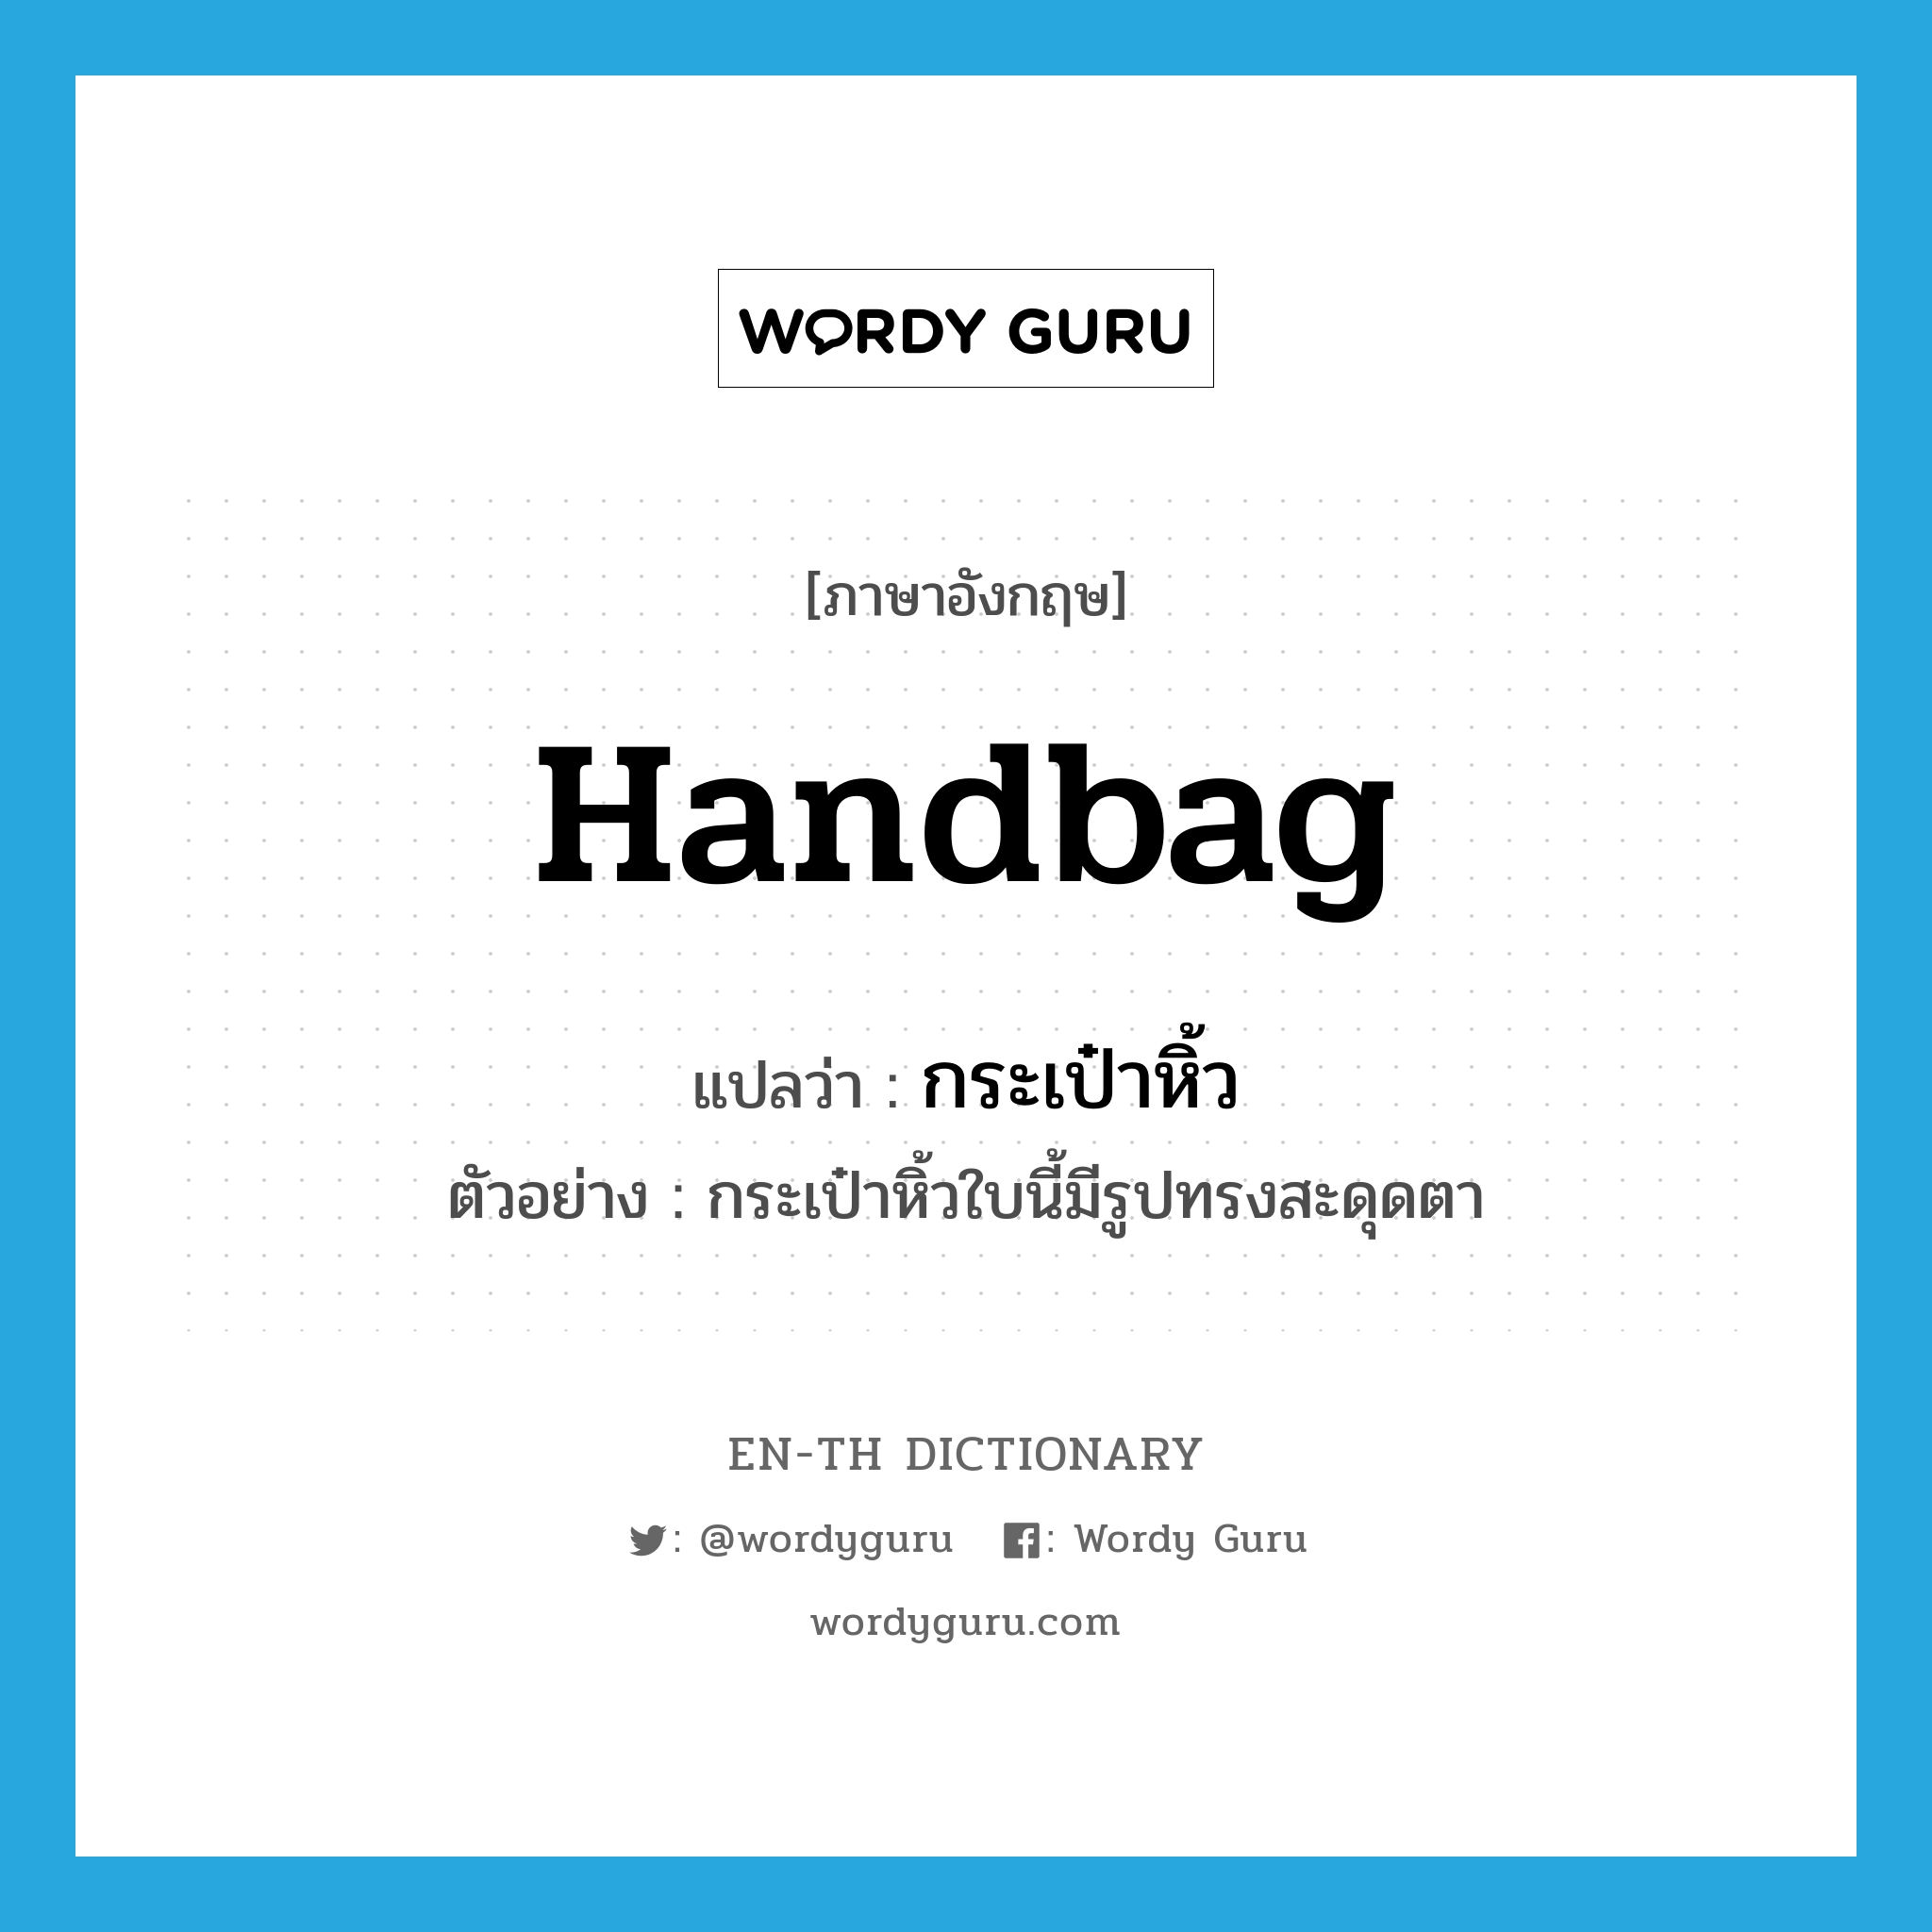 handbag แปลว่า?, คำศัพท์ภาษาอังกฤษ handbag แปลว่า กระเป๋าหิ้ว ประเภท N ตัวอย่าง กระเป๋าหิ้วใบนี้มีรูปทรงสะดุดตา หมวด N